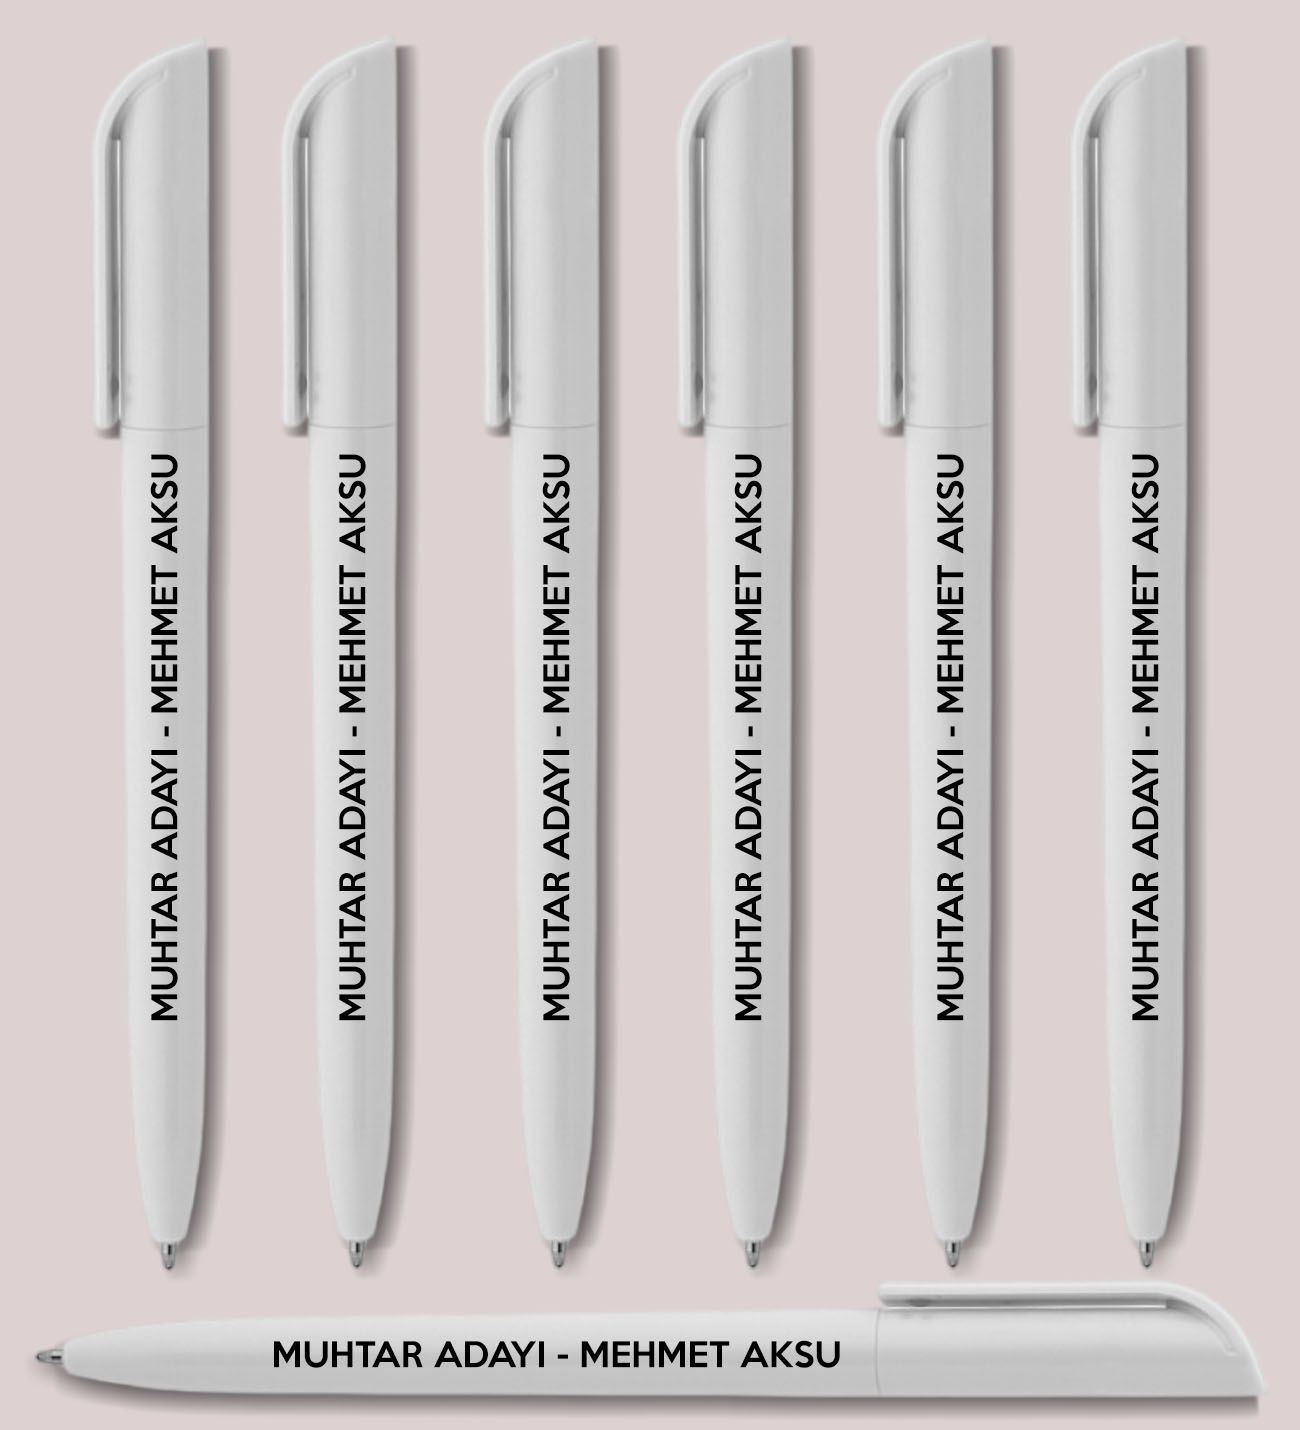 Muhtar Adaylarına Özel Promosyon Beyaz Plastik Tükenmez Kalem, Seçim Promosyon Ürünleri (500 Adet)